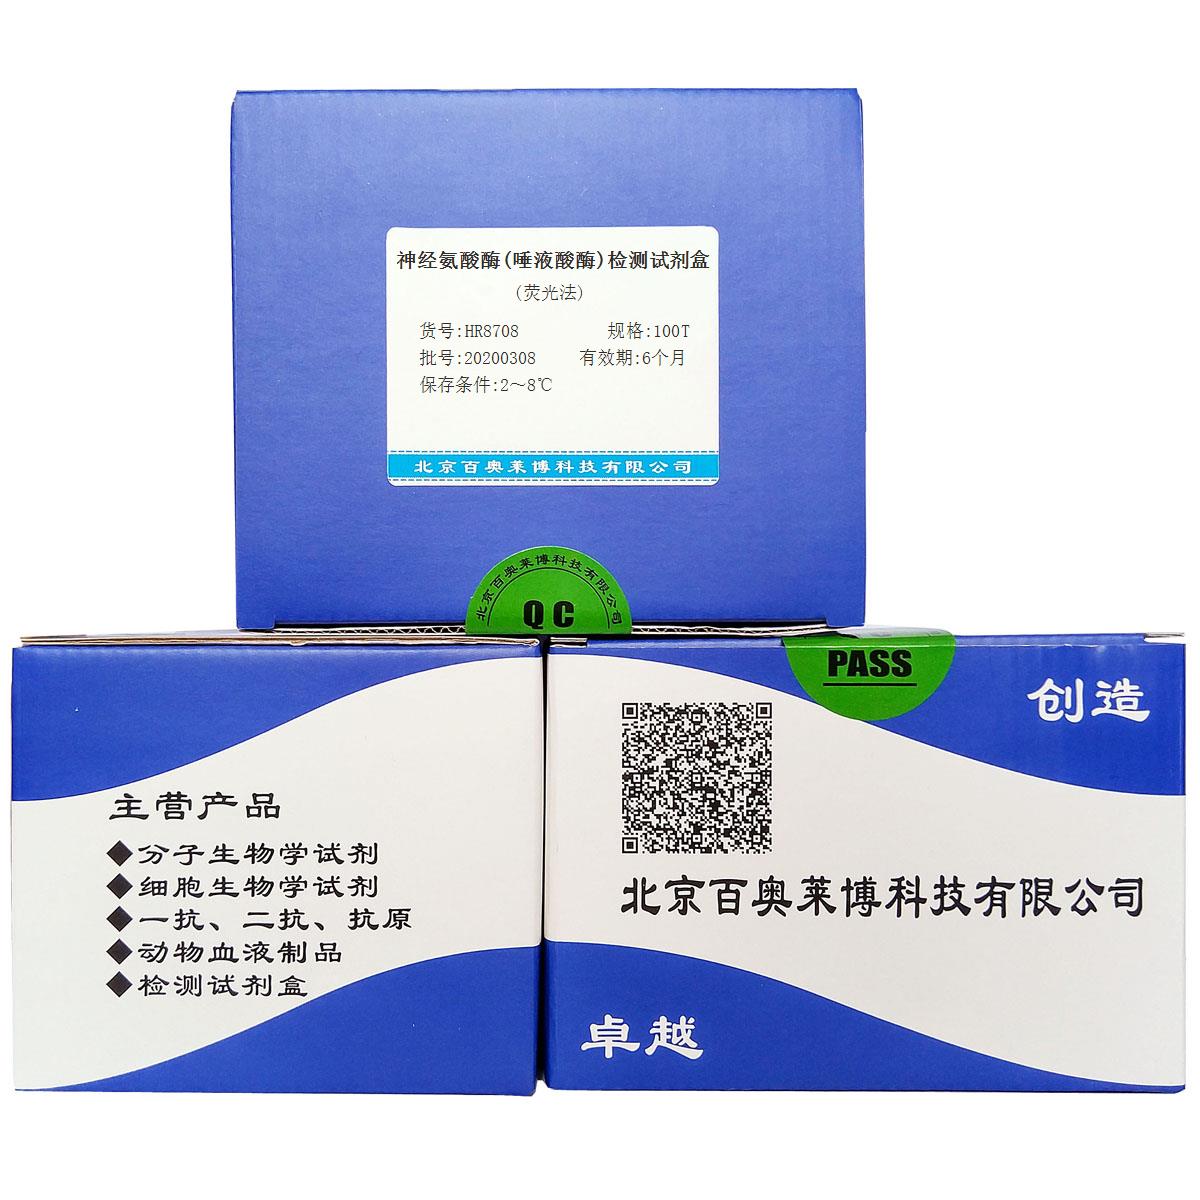 神经氨酸酶(唾液酸酶)检测试剂盒(荧光法)